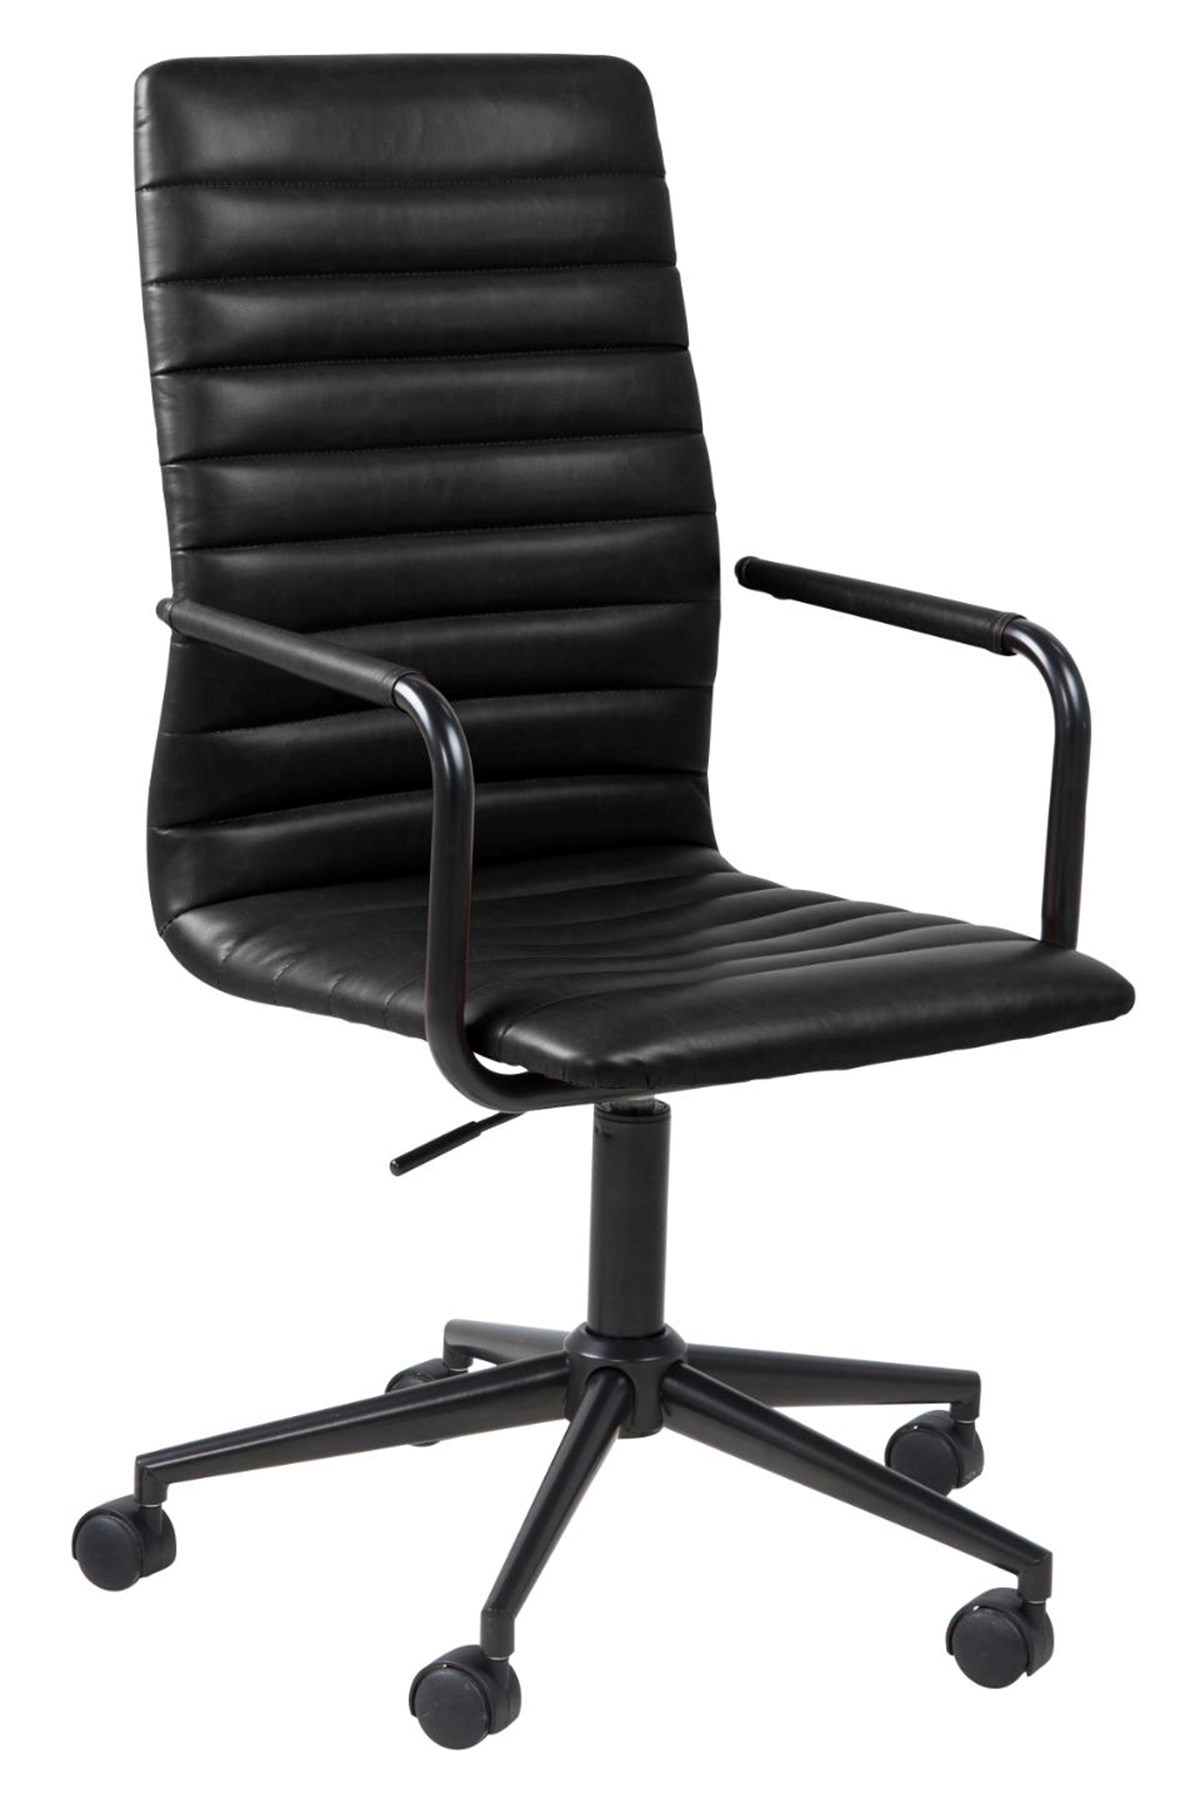 Chaise-bureau-Winslow-66195-simili cuir-noir-pied-metal-noir-roulettes-01-Actona